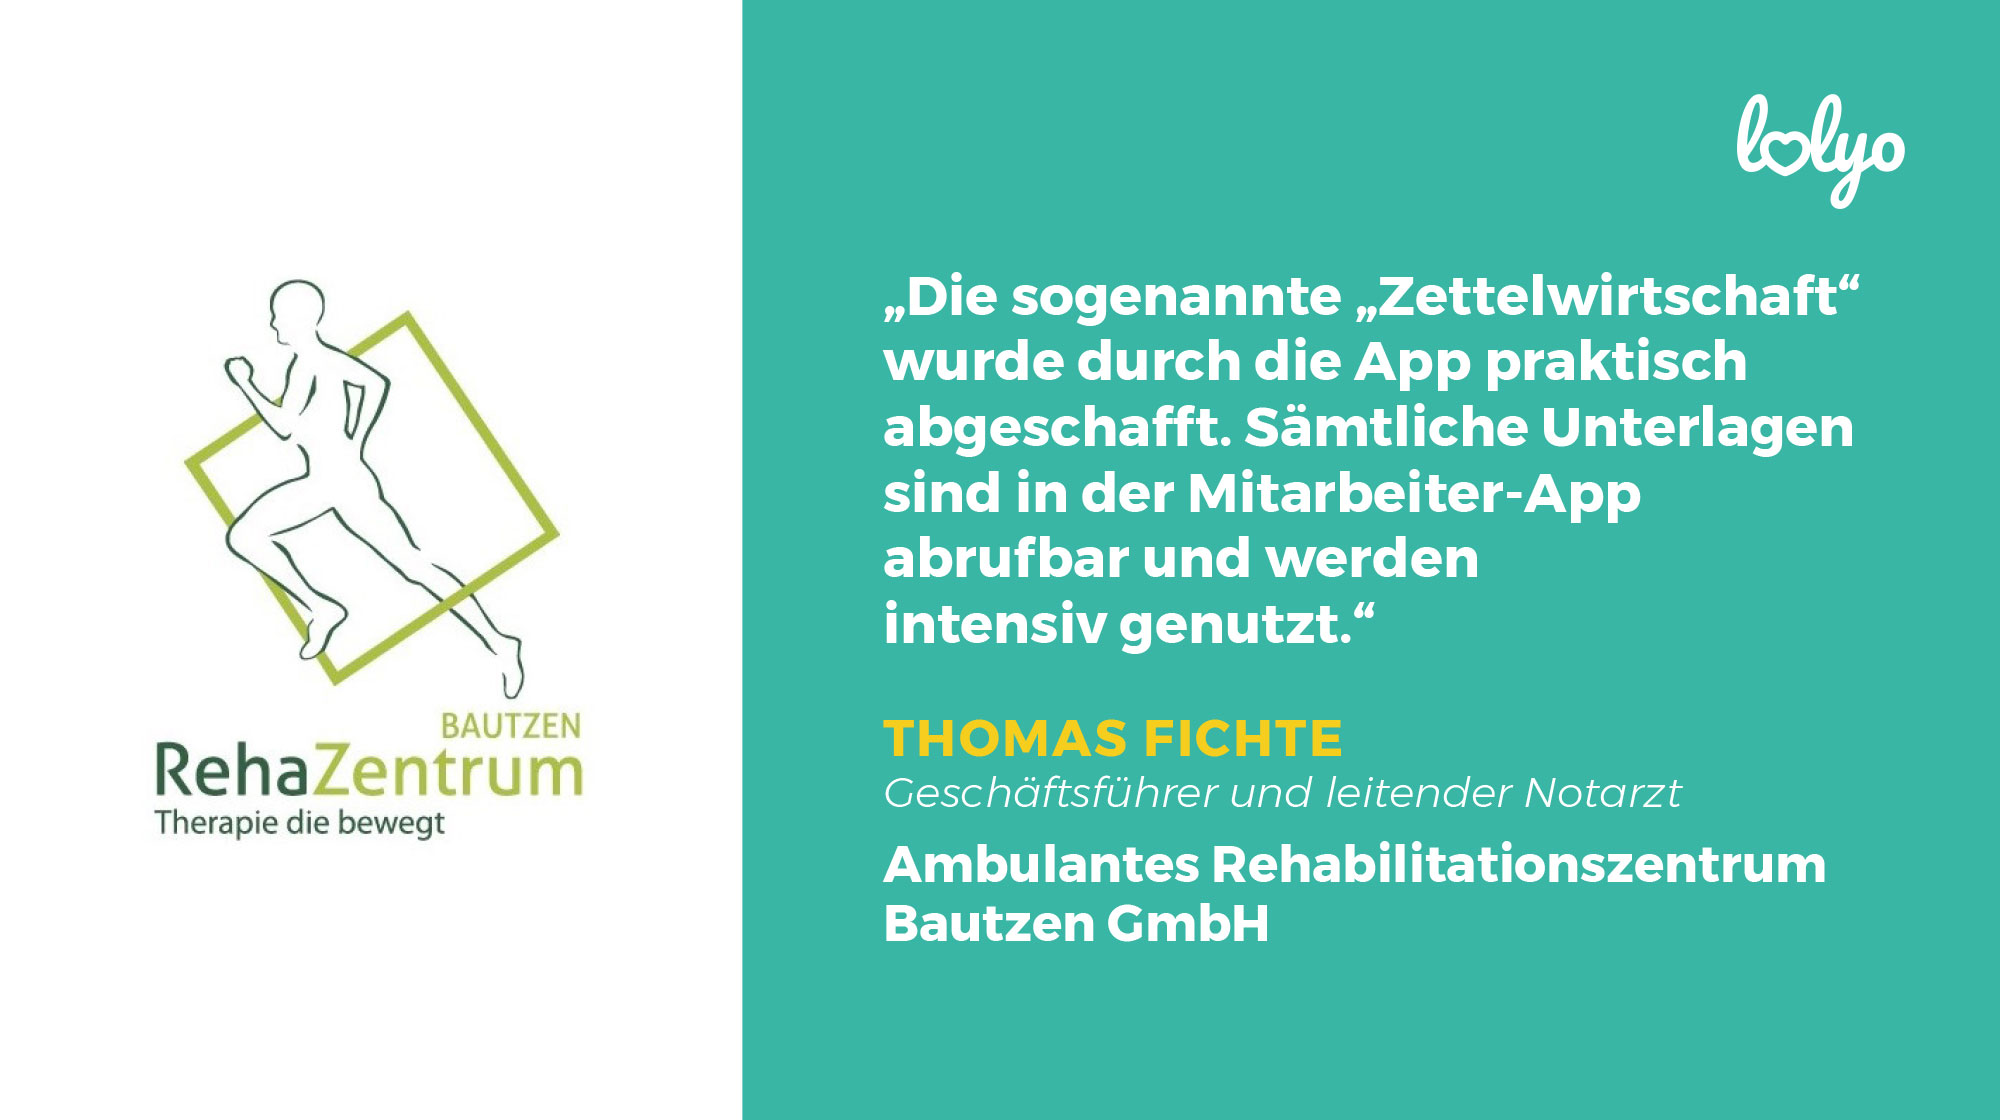 LOLYO Mitarbeiter-App - Rehazentrum Bautzen - Thomas Fichte - Logo - Zitat - Bild